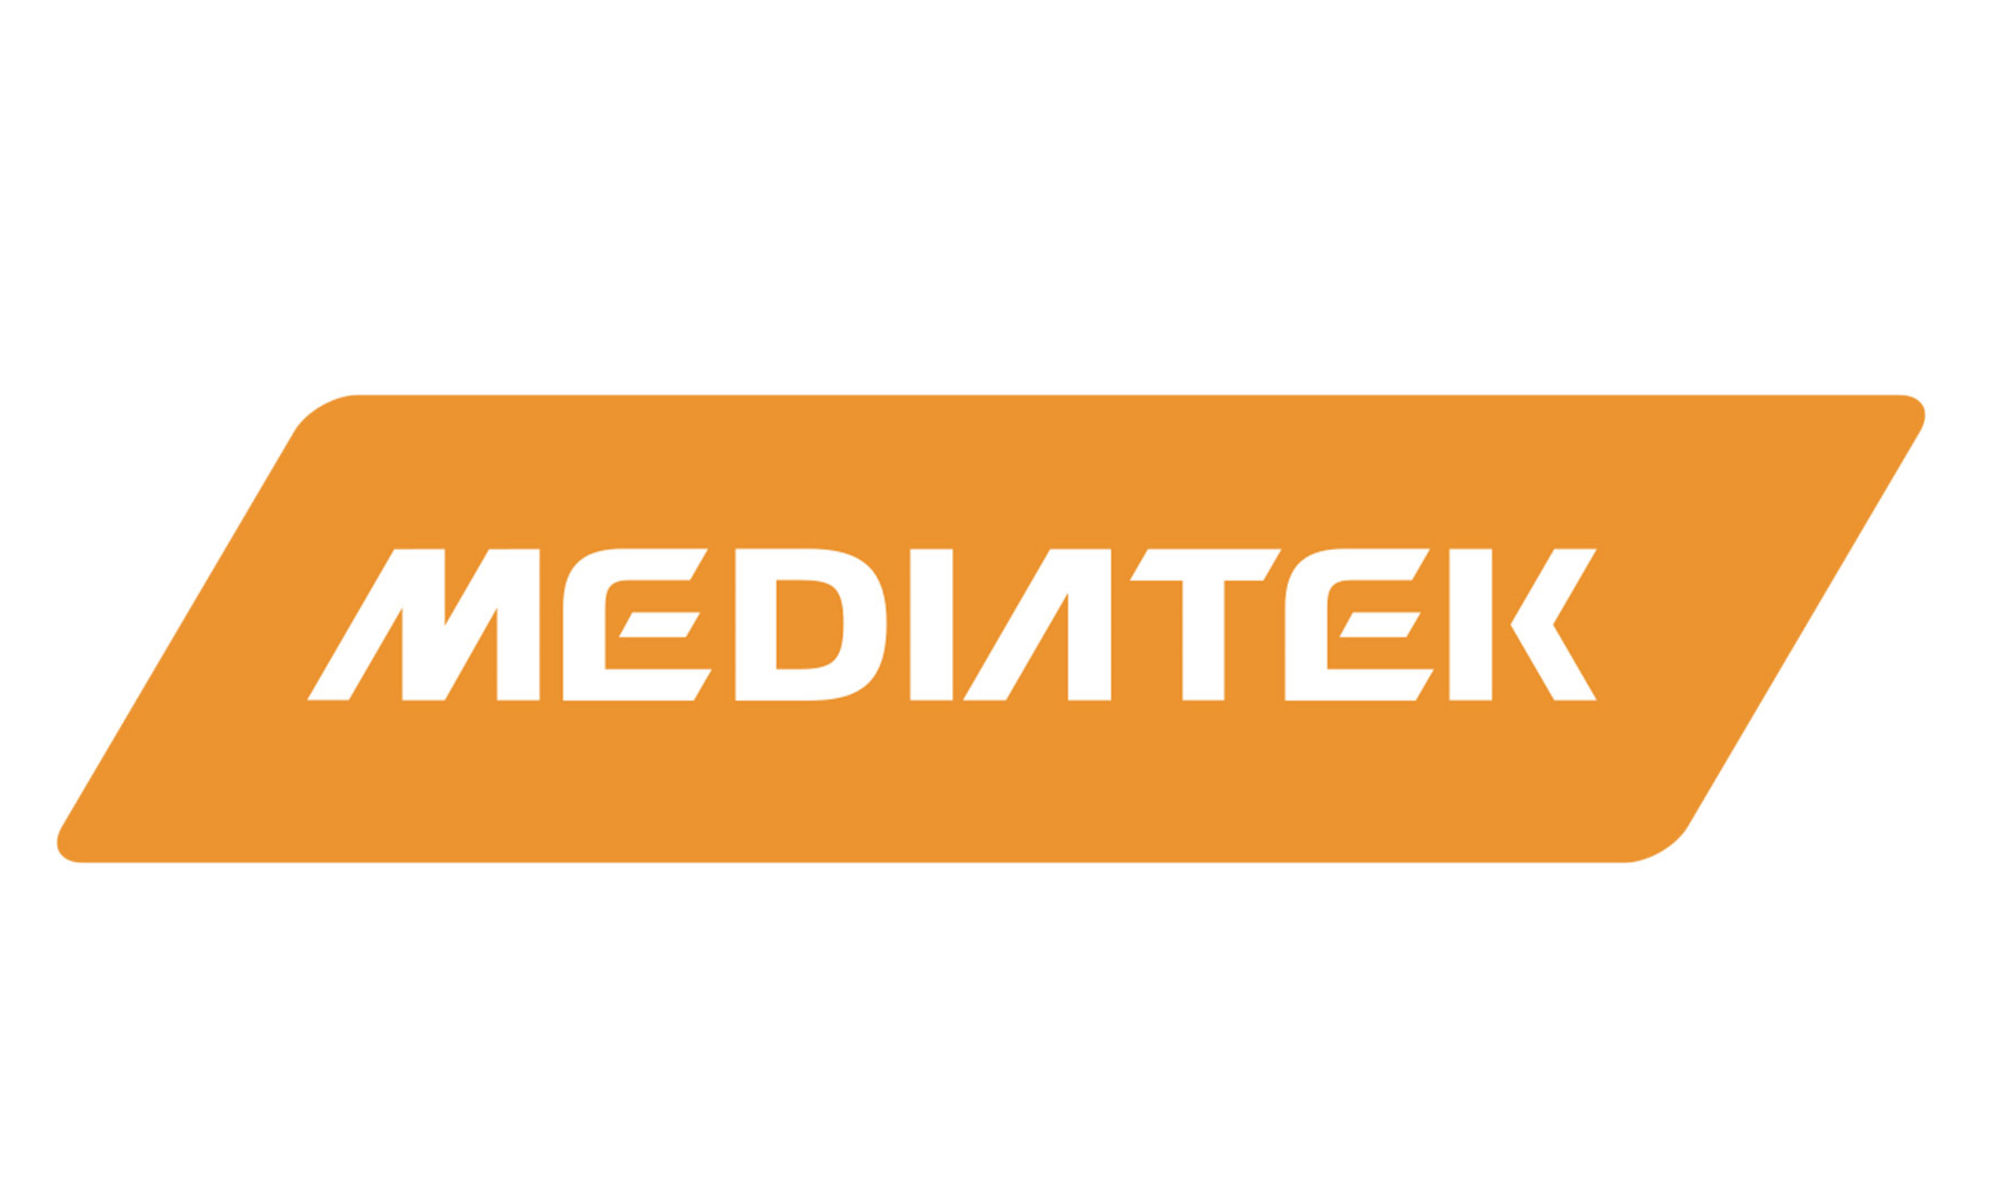 Mediatek 標誌